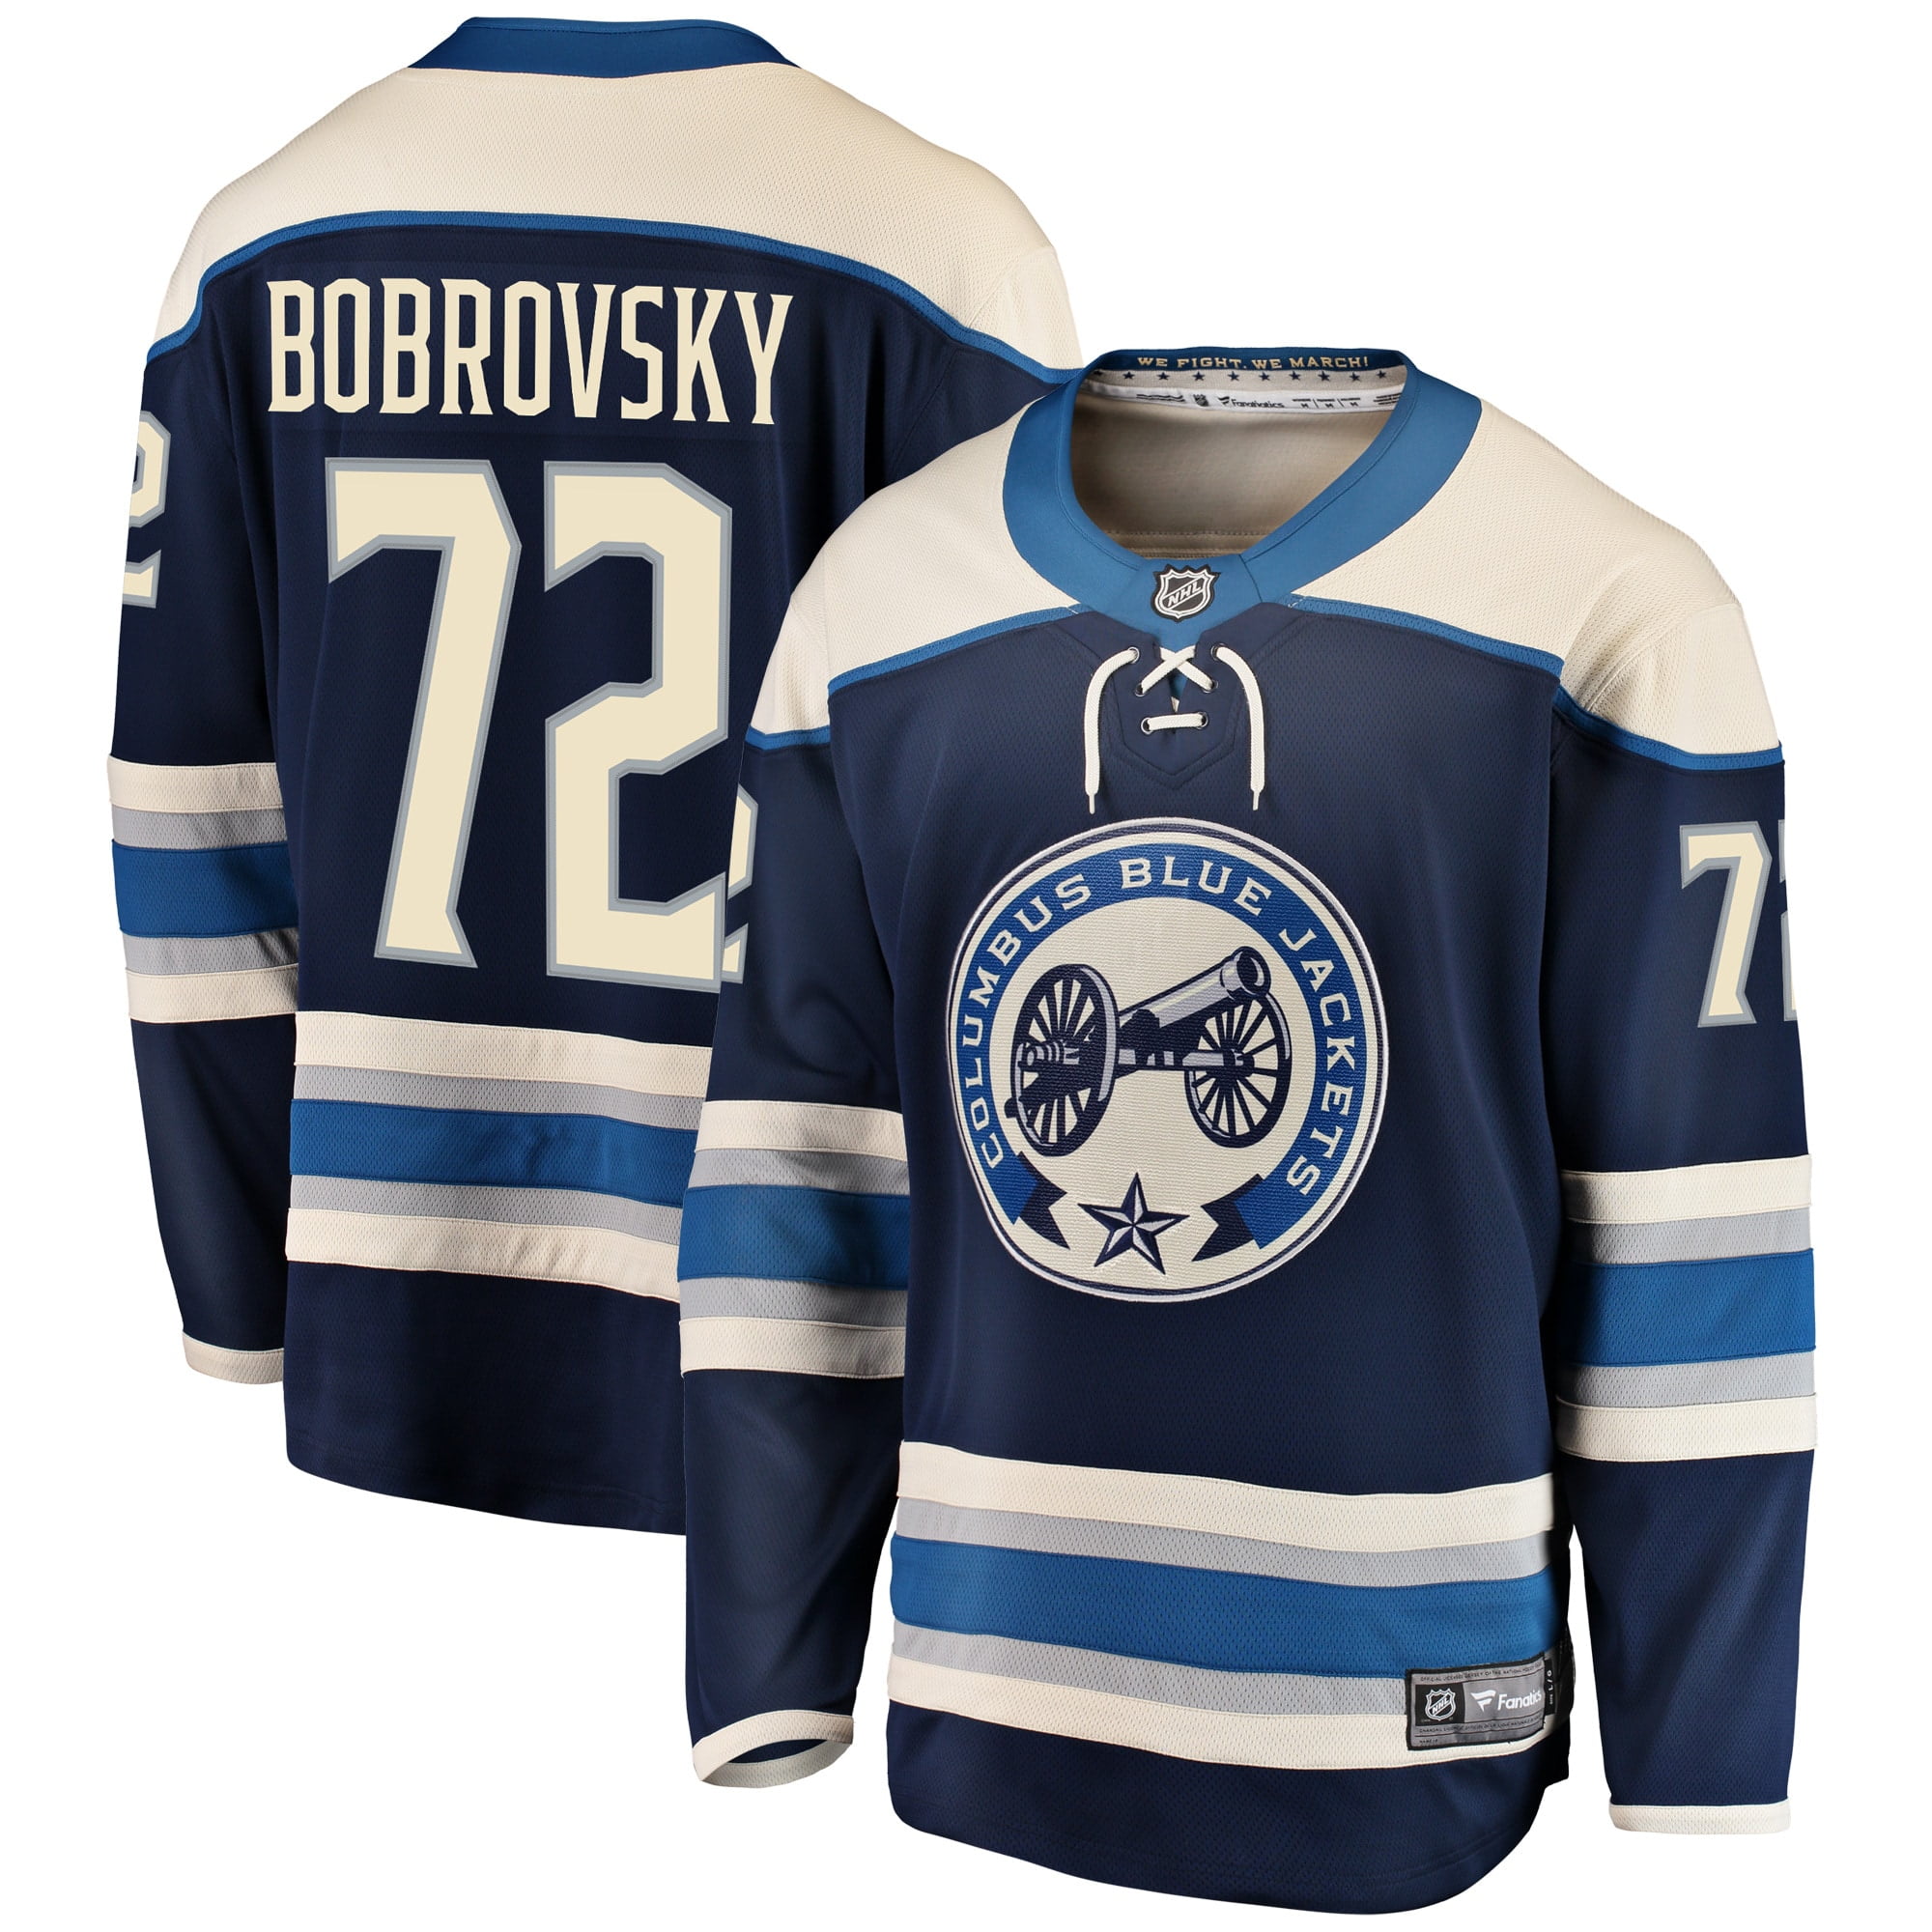 bobrovsky jersey blue jackets